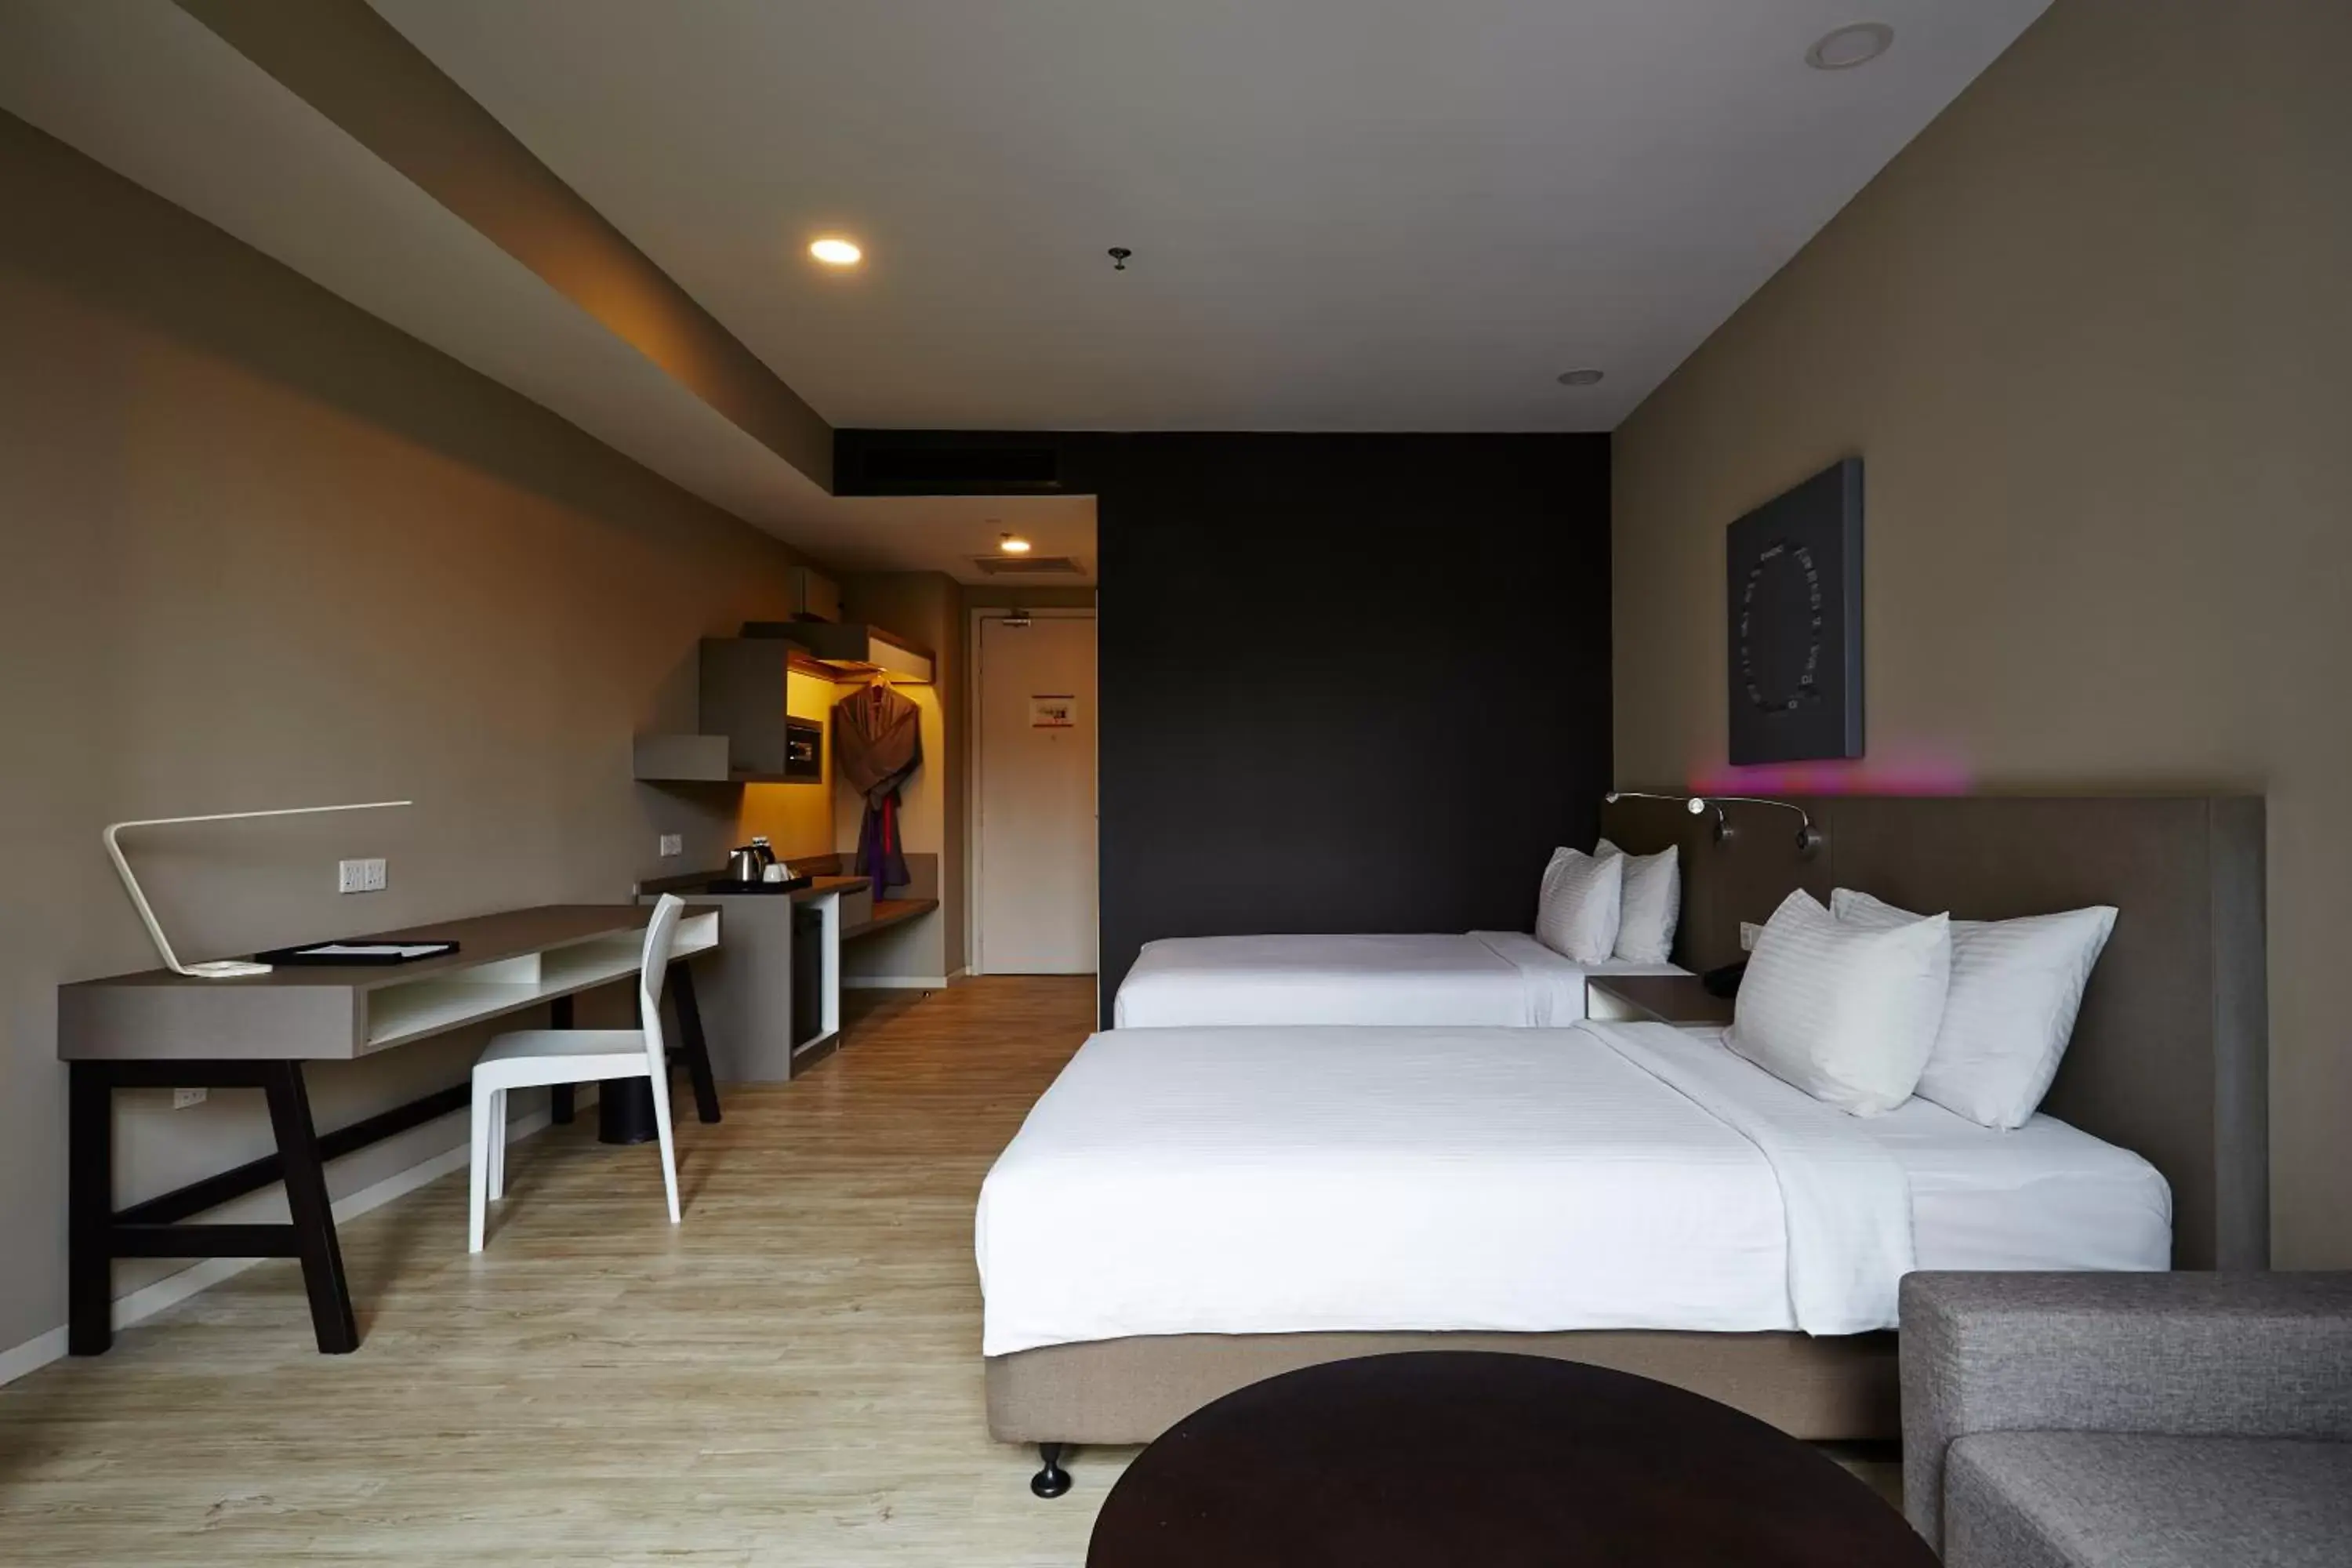 Bed, Restaurant/Places to Eat in Qliq Damansara Hotel